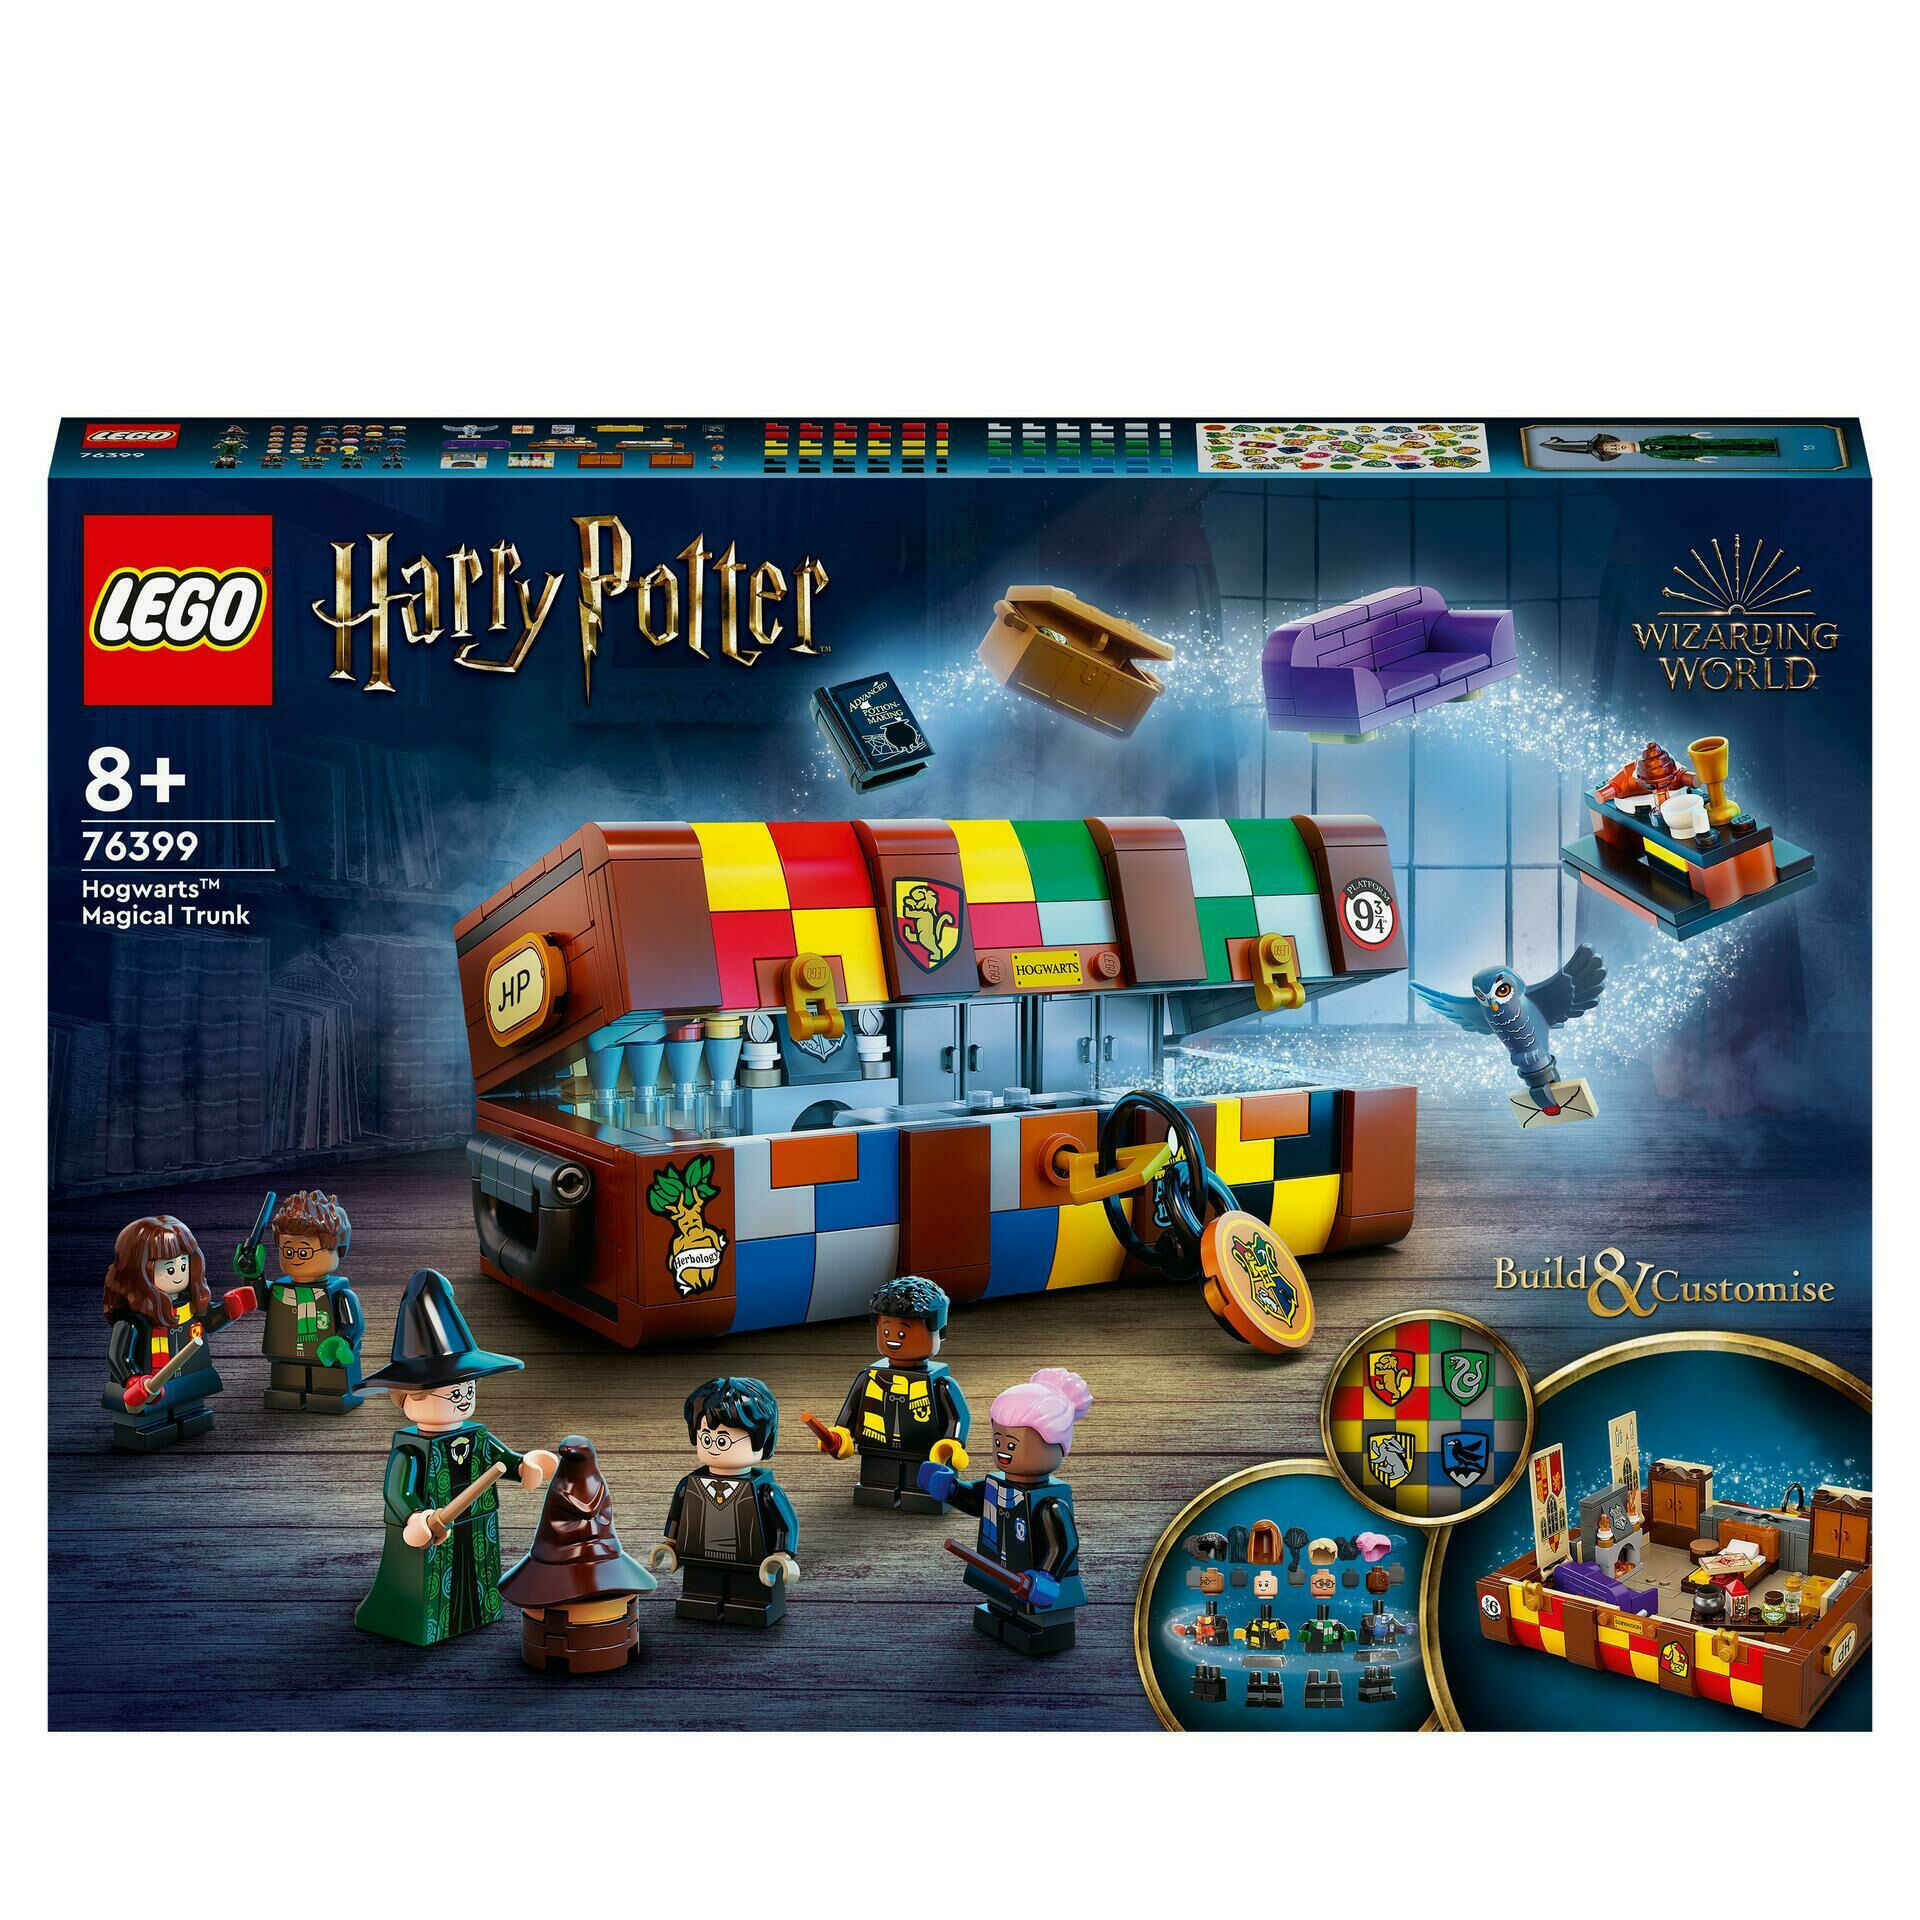 LEGO Harry Potter #01 - A Magia começa!